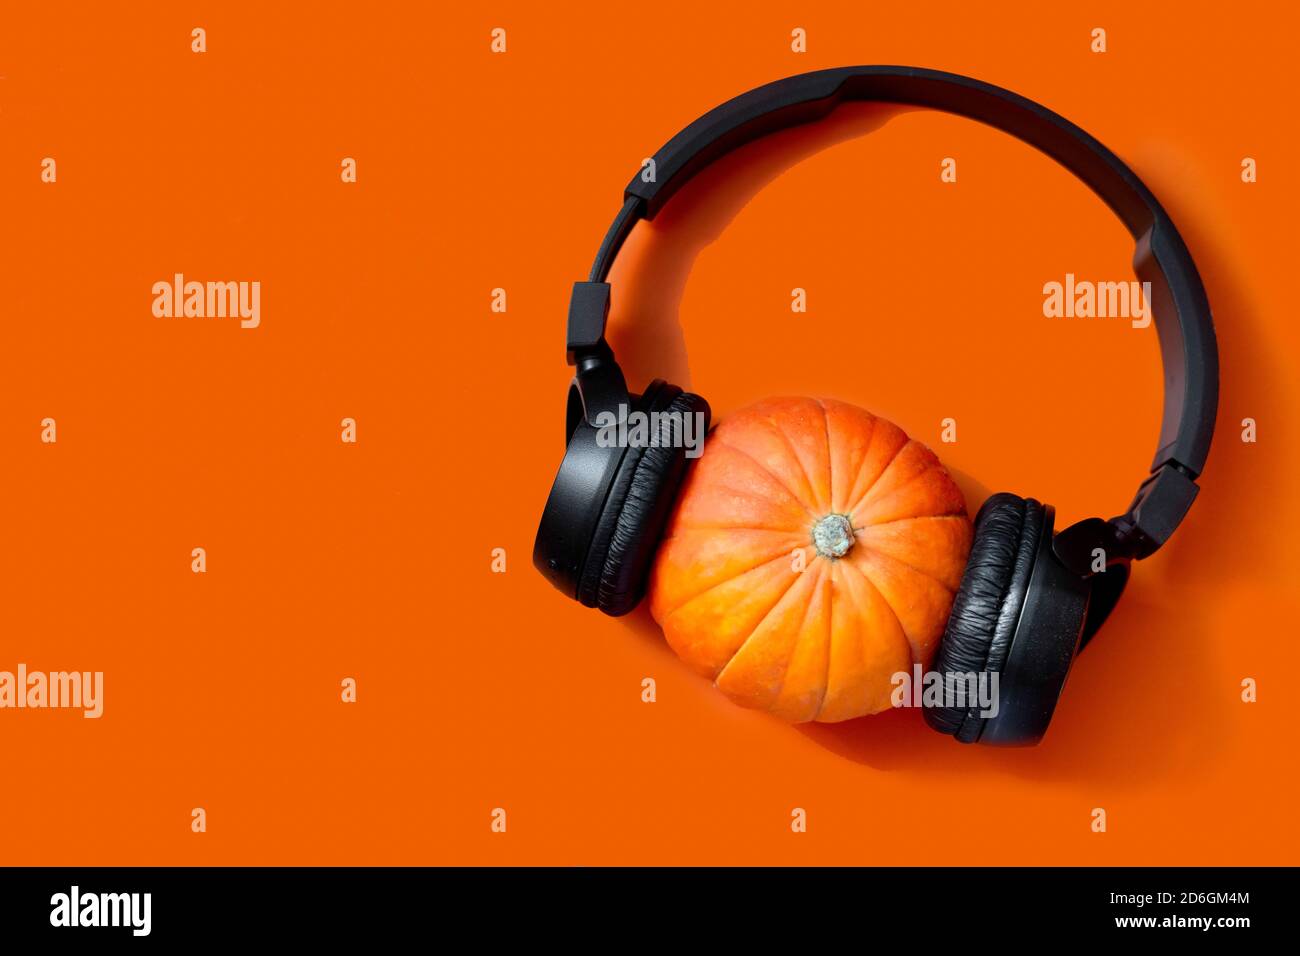 zucca su sfondo arancione. cuffie wireless sulla zucca. preparazione per l'halloween Foto Stock